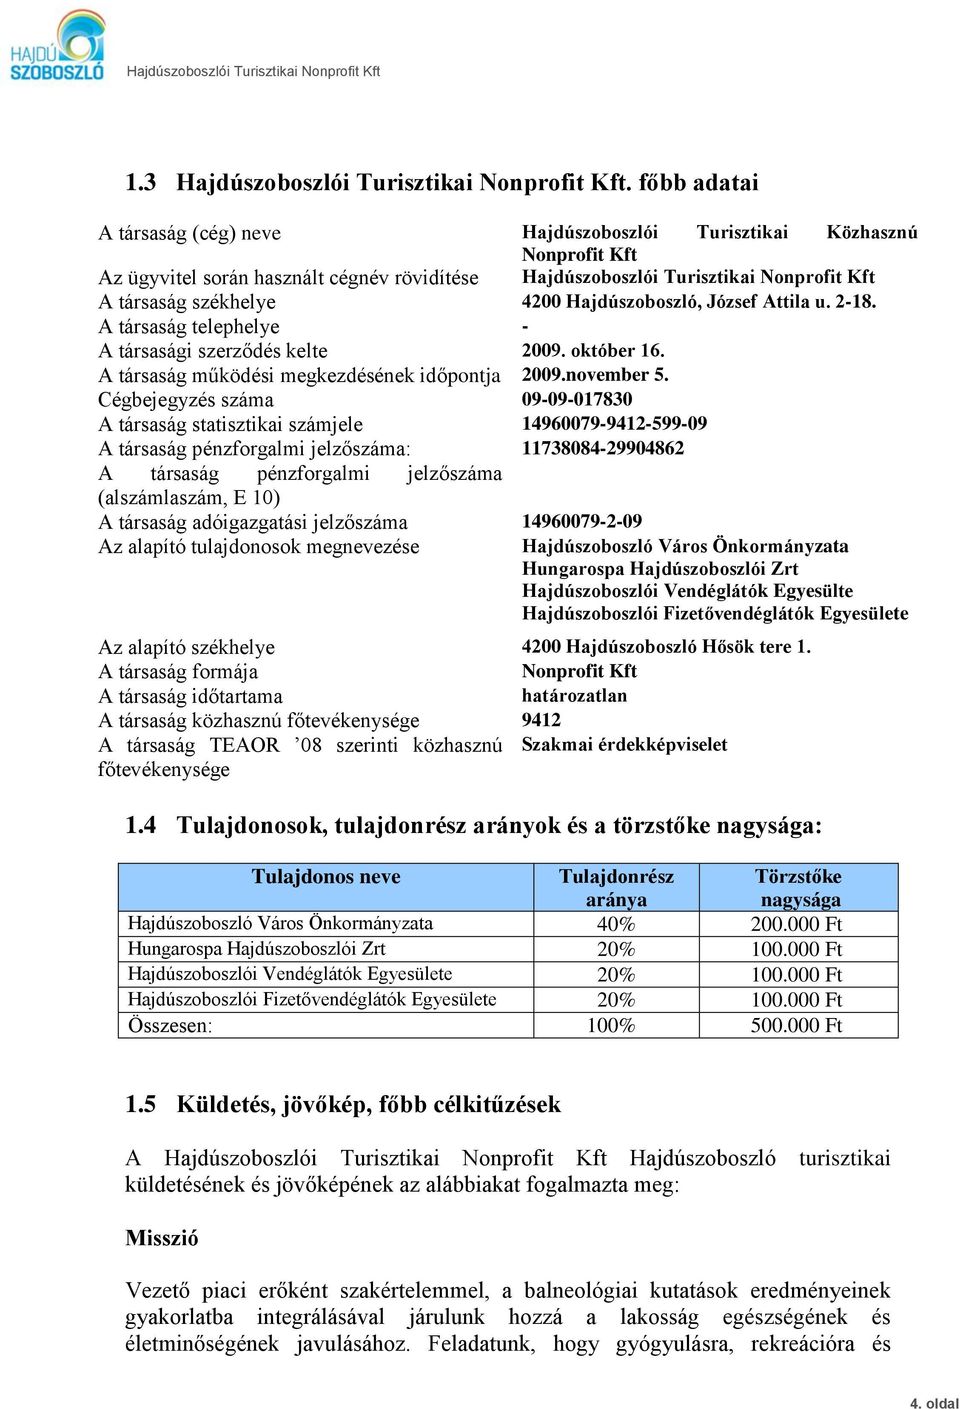 Hajdúszoboszló, József Attila u. 2-18. A társaság telephelye - A társasági szerződés kelte 2009. október 16. A társaság működési megkezdésének időpontja 2009.november 5.